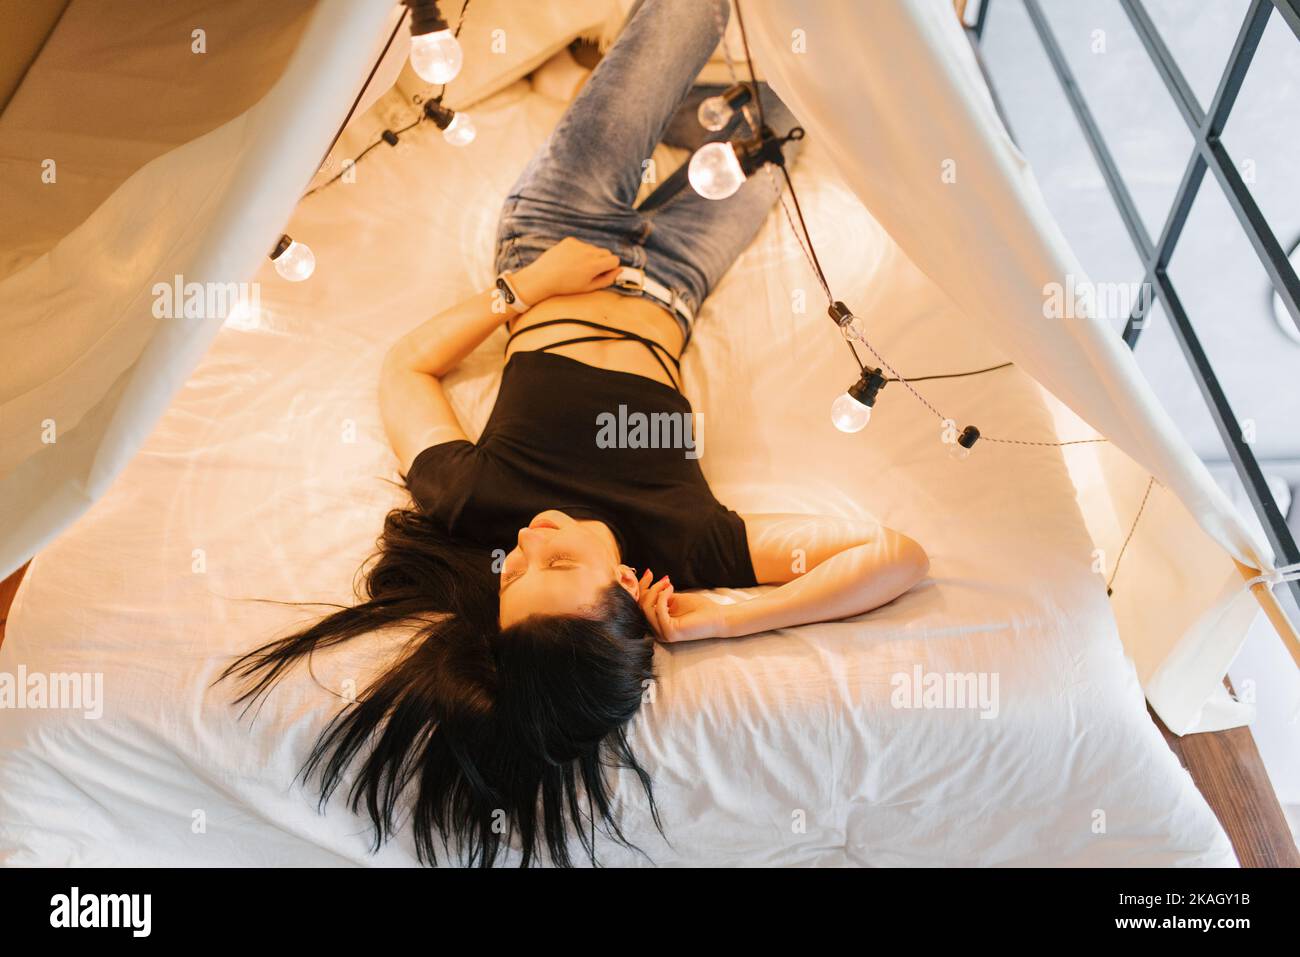 Una mujer joven está acostada en una cama con dosel con bombillas brillantes Foto de stock